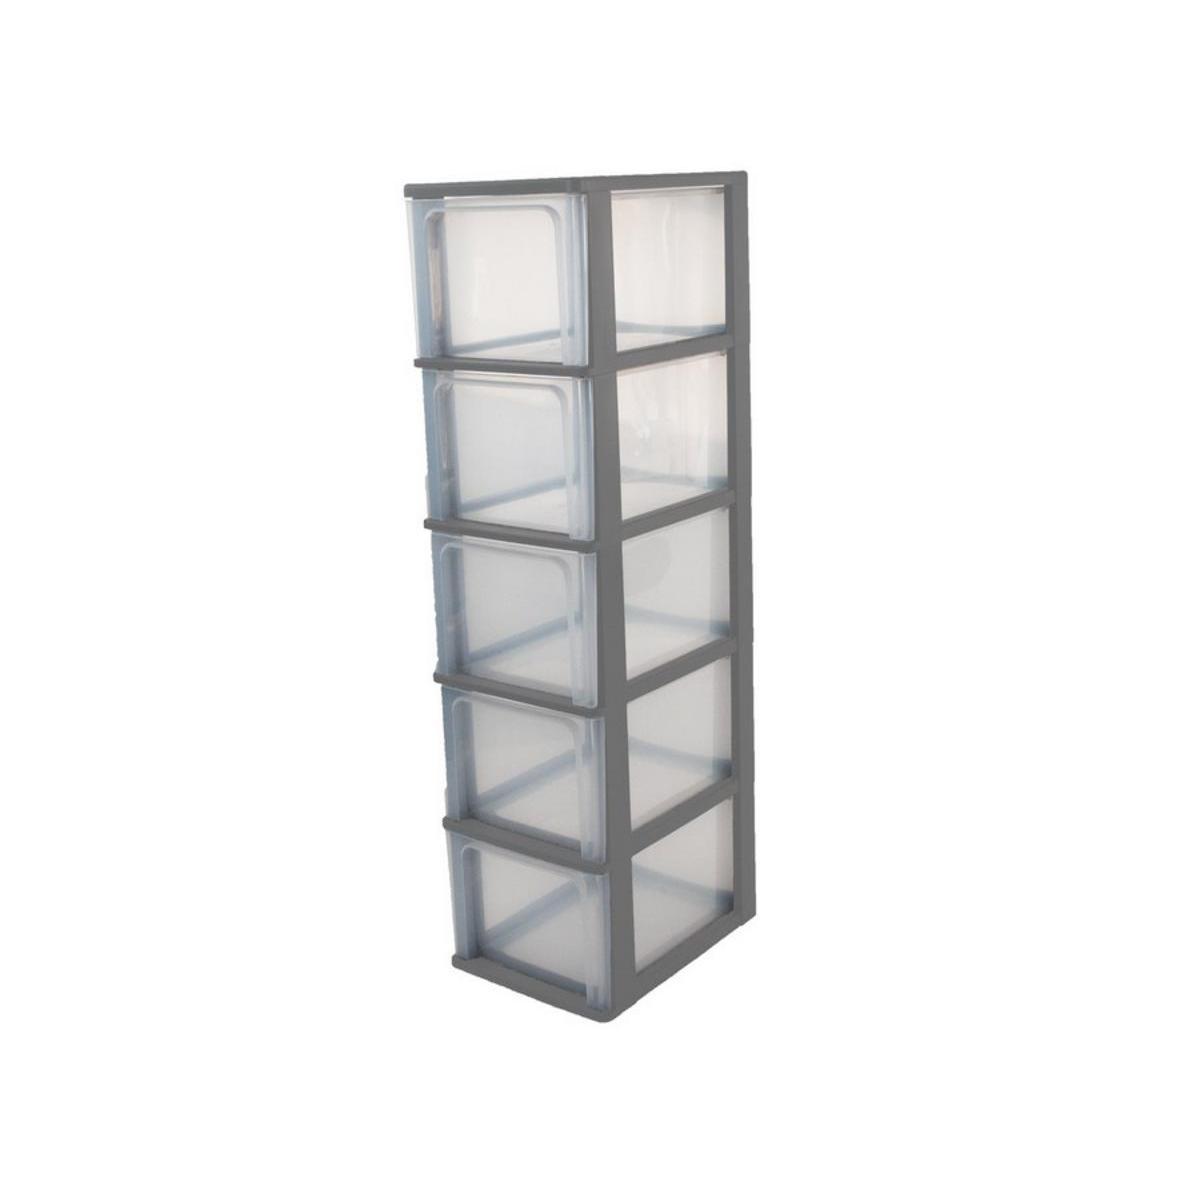 Tour de rangement 5 tiroirs - Plastique - 35,5 x 26 x H 99,5 cm - Taupe et transparent